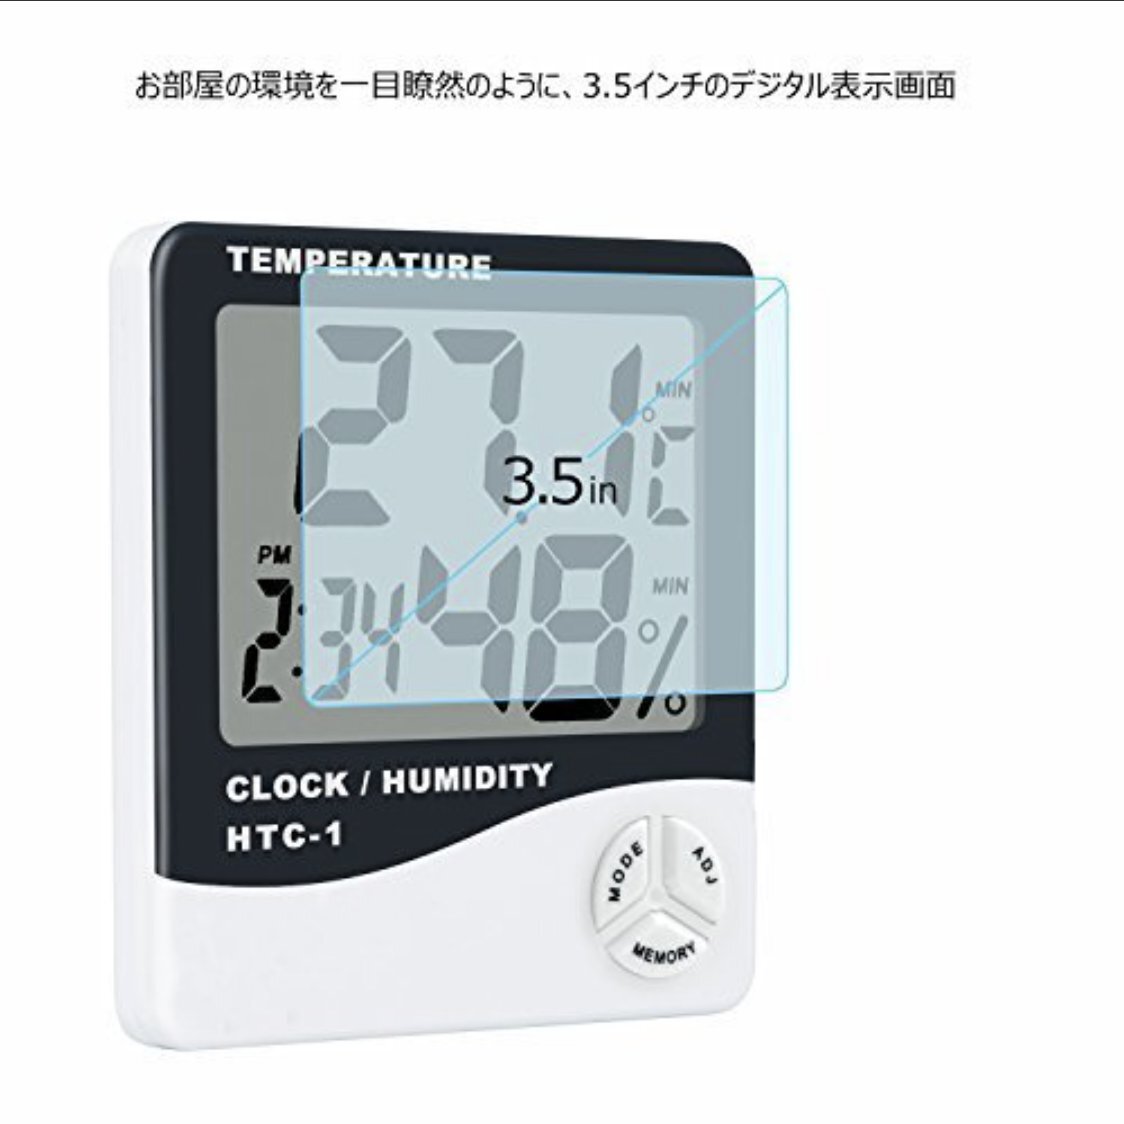  цифровая ... Влажность  итого    часы   будильник    температура   в помещении  окружение   контрольный  HTC-1  батарея  идет в комплекте 